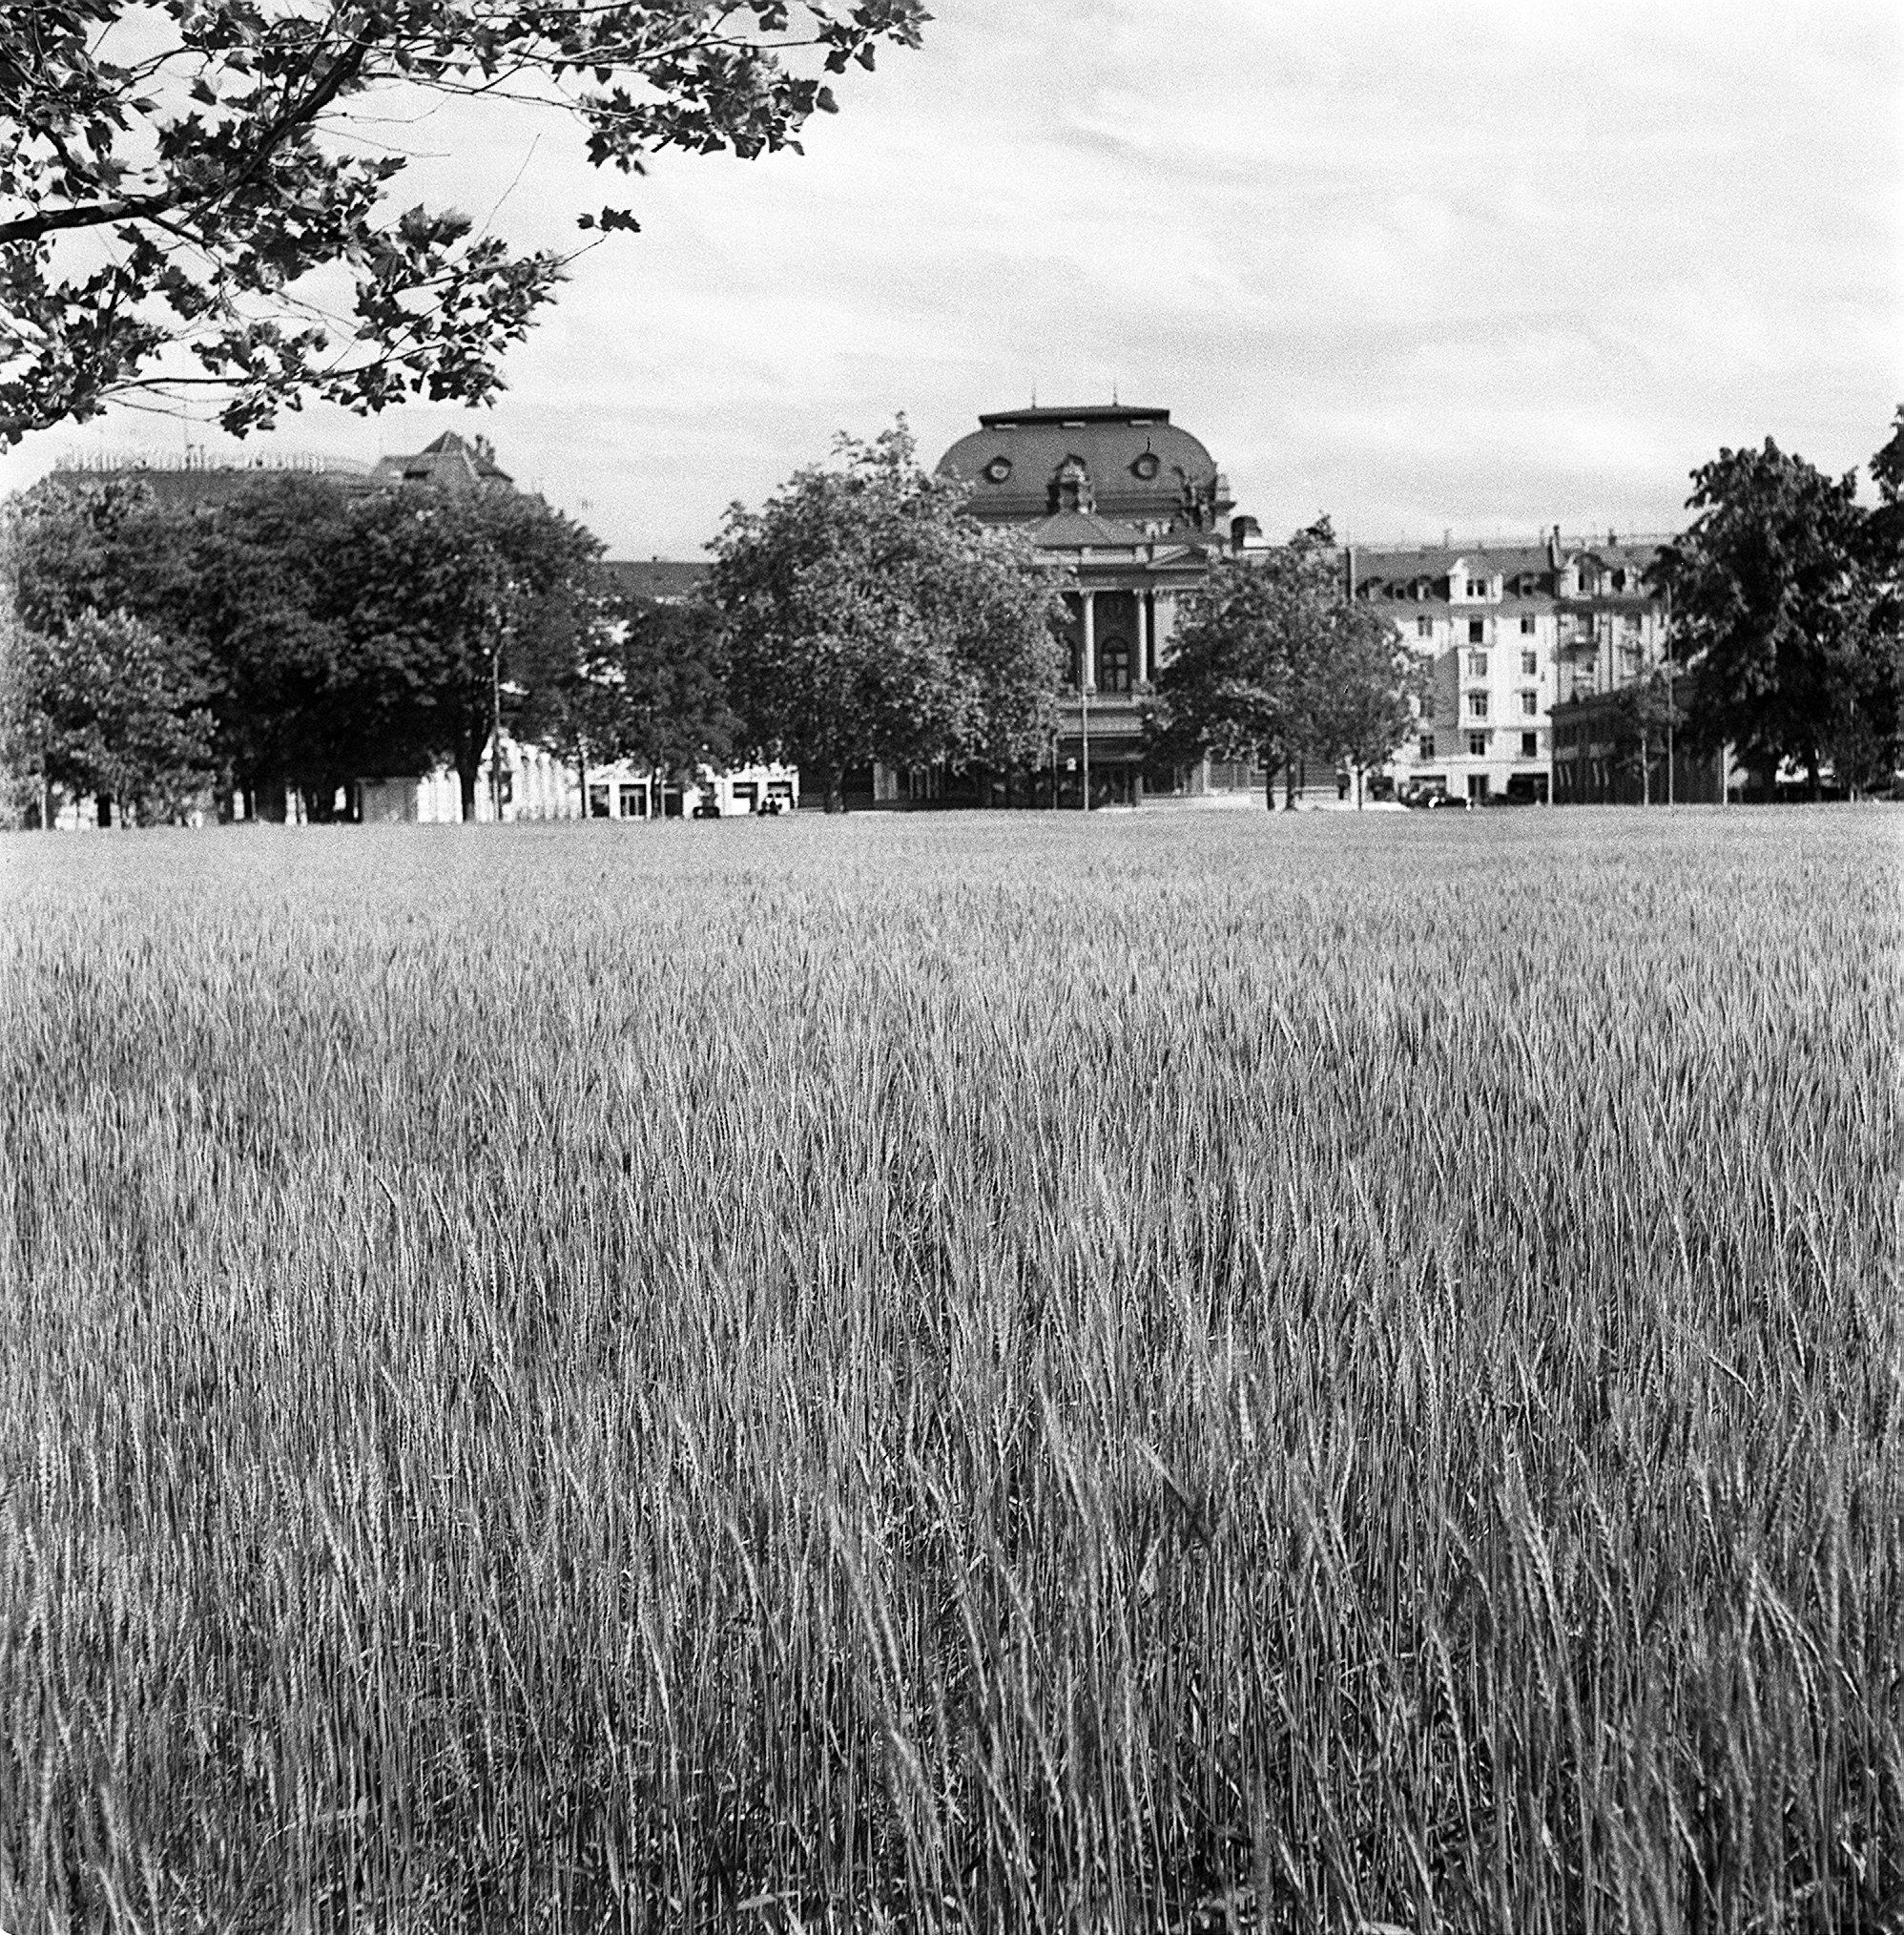 Getreide wächst auf dem Acker vor dem Zürcher Opernhaus während des Zweiten Weltkrieges.